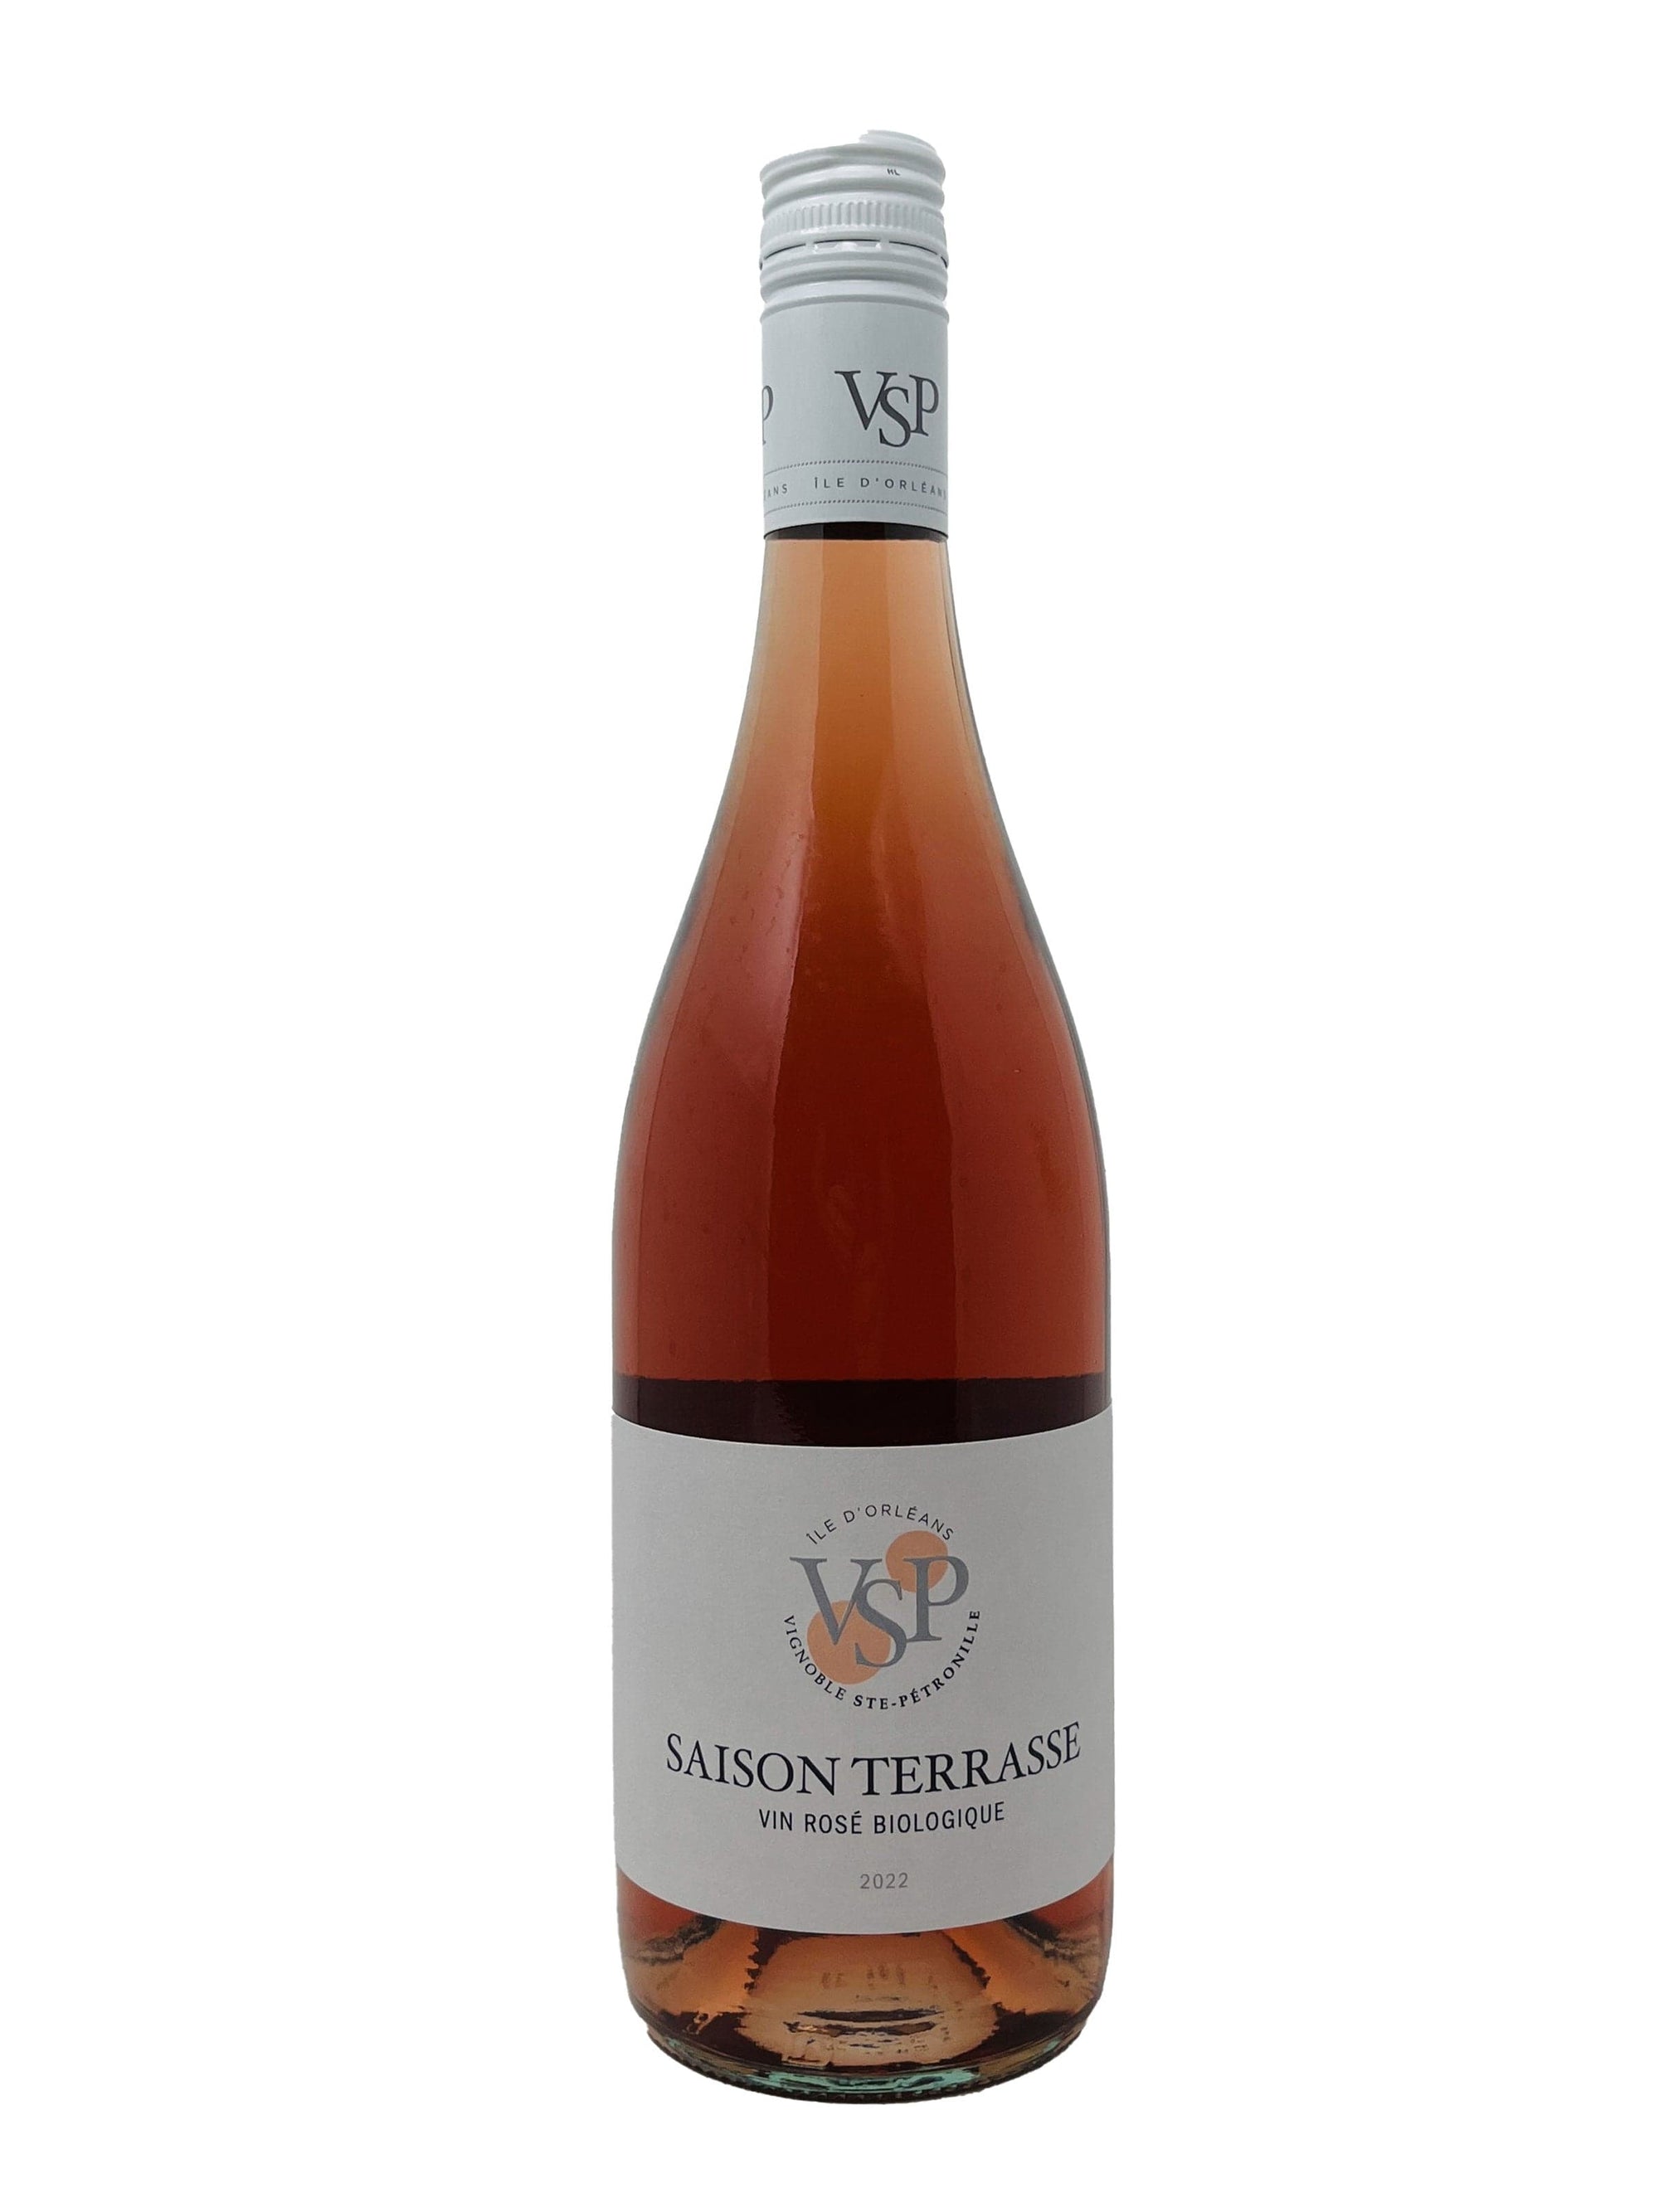 Vignoble Ste-Pétronille vin Saison Terrasse 2022 - Vin rosé biologique du Vignoble Ste-Pétronille